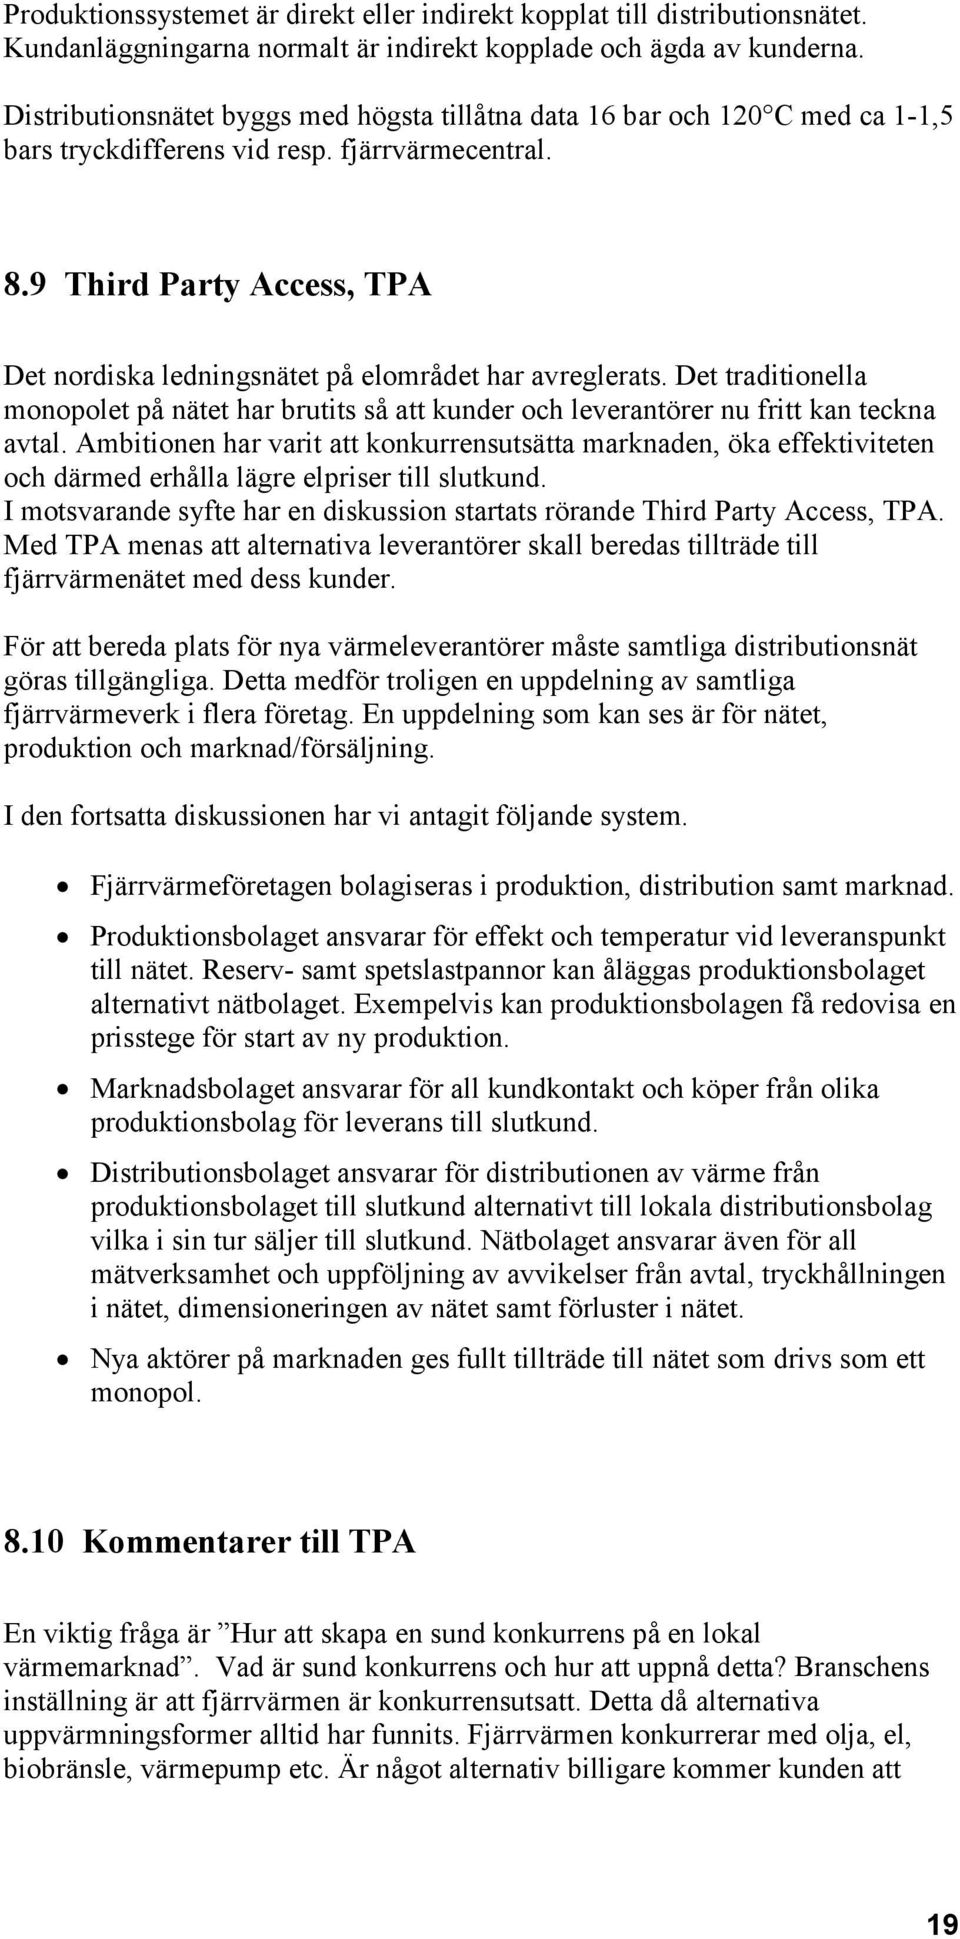 9 Third Party Access, TPA Det nordiska ledningsnätet på elområdet har avreglerats. Det traditionella monopolet på nätet har brutits så att kunder och leverantörer nu fritt kan teckna avtal.